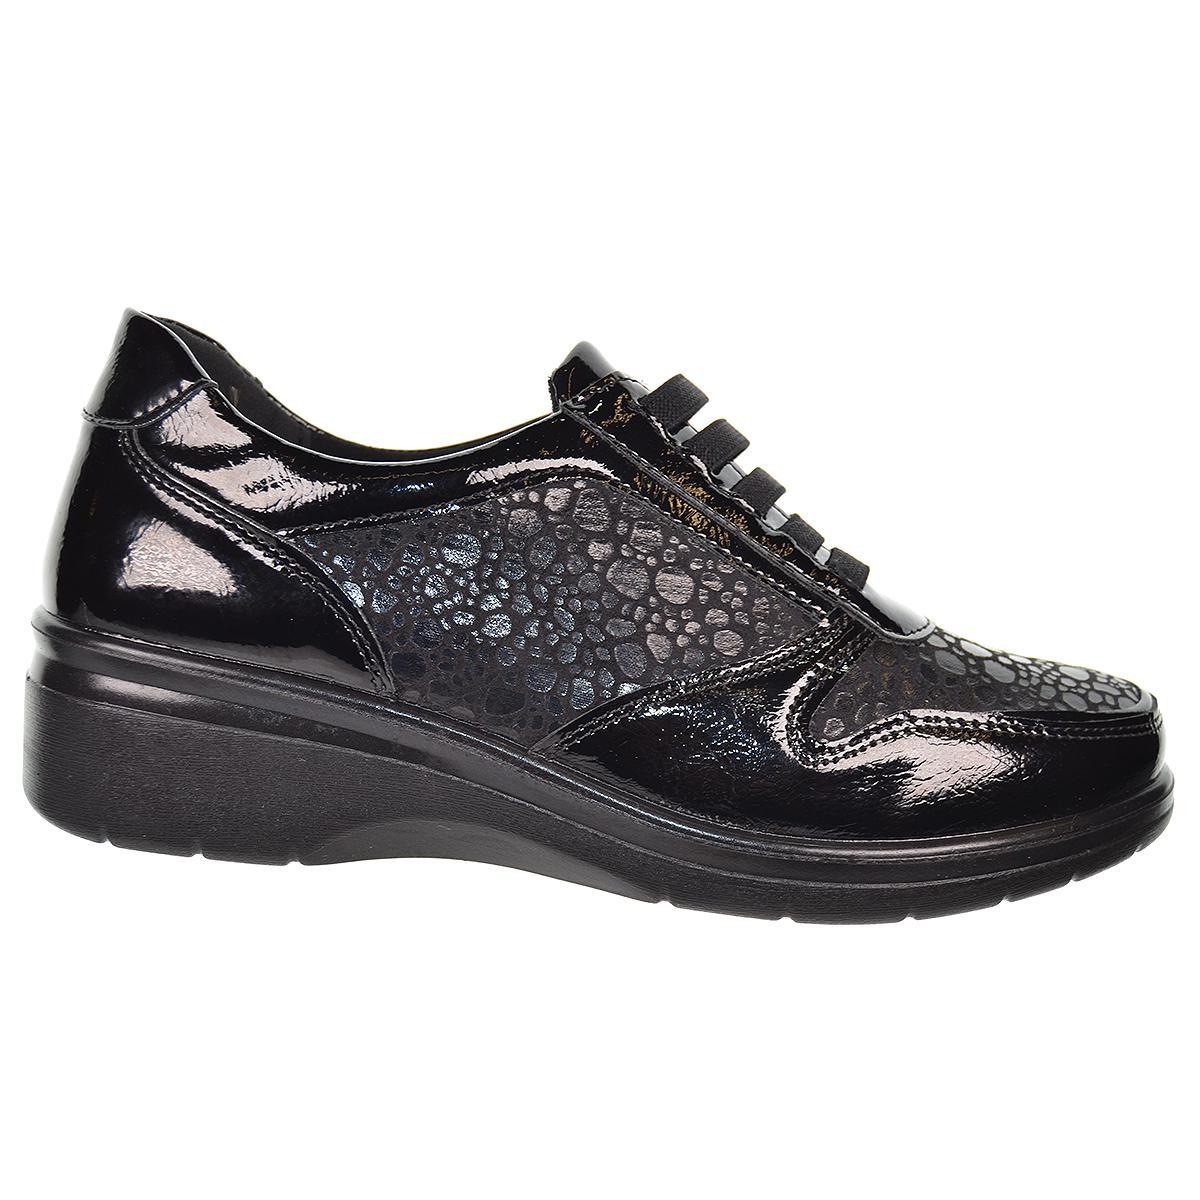 25363 Amarpies Zapato sintético charol y textil. elástico. plantilla acolchada confort extraíble.  cuña 4cm. ligera y flexible